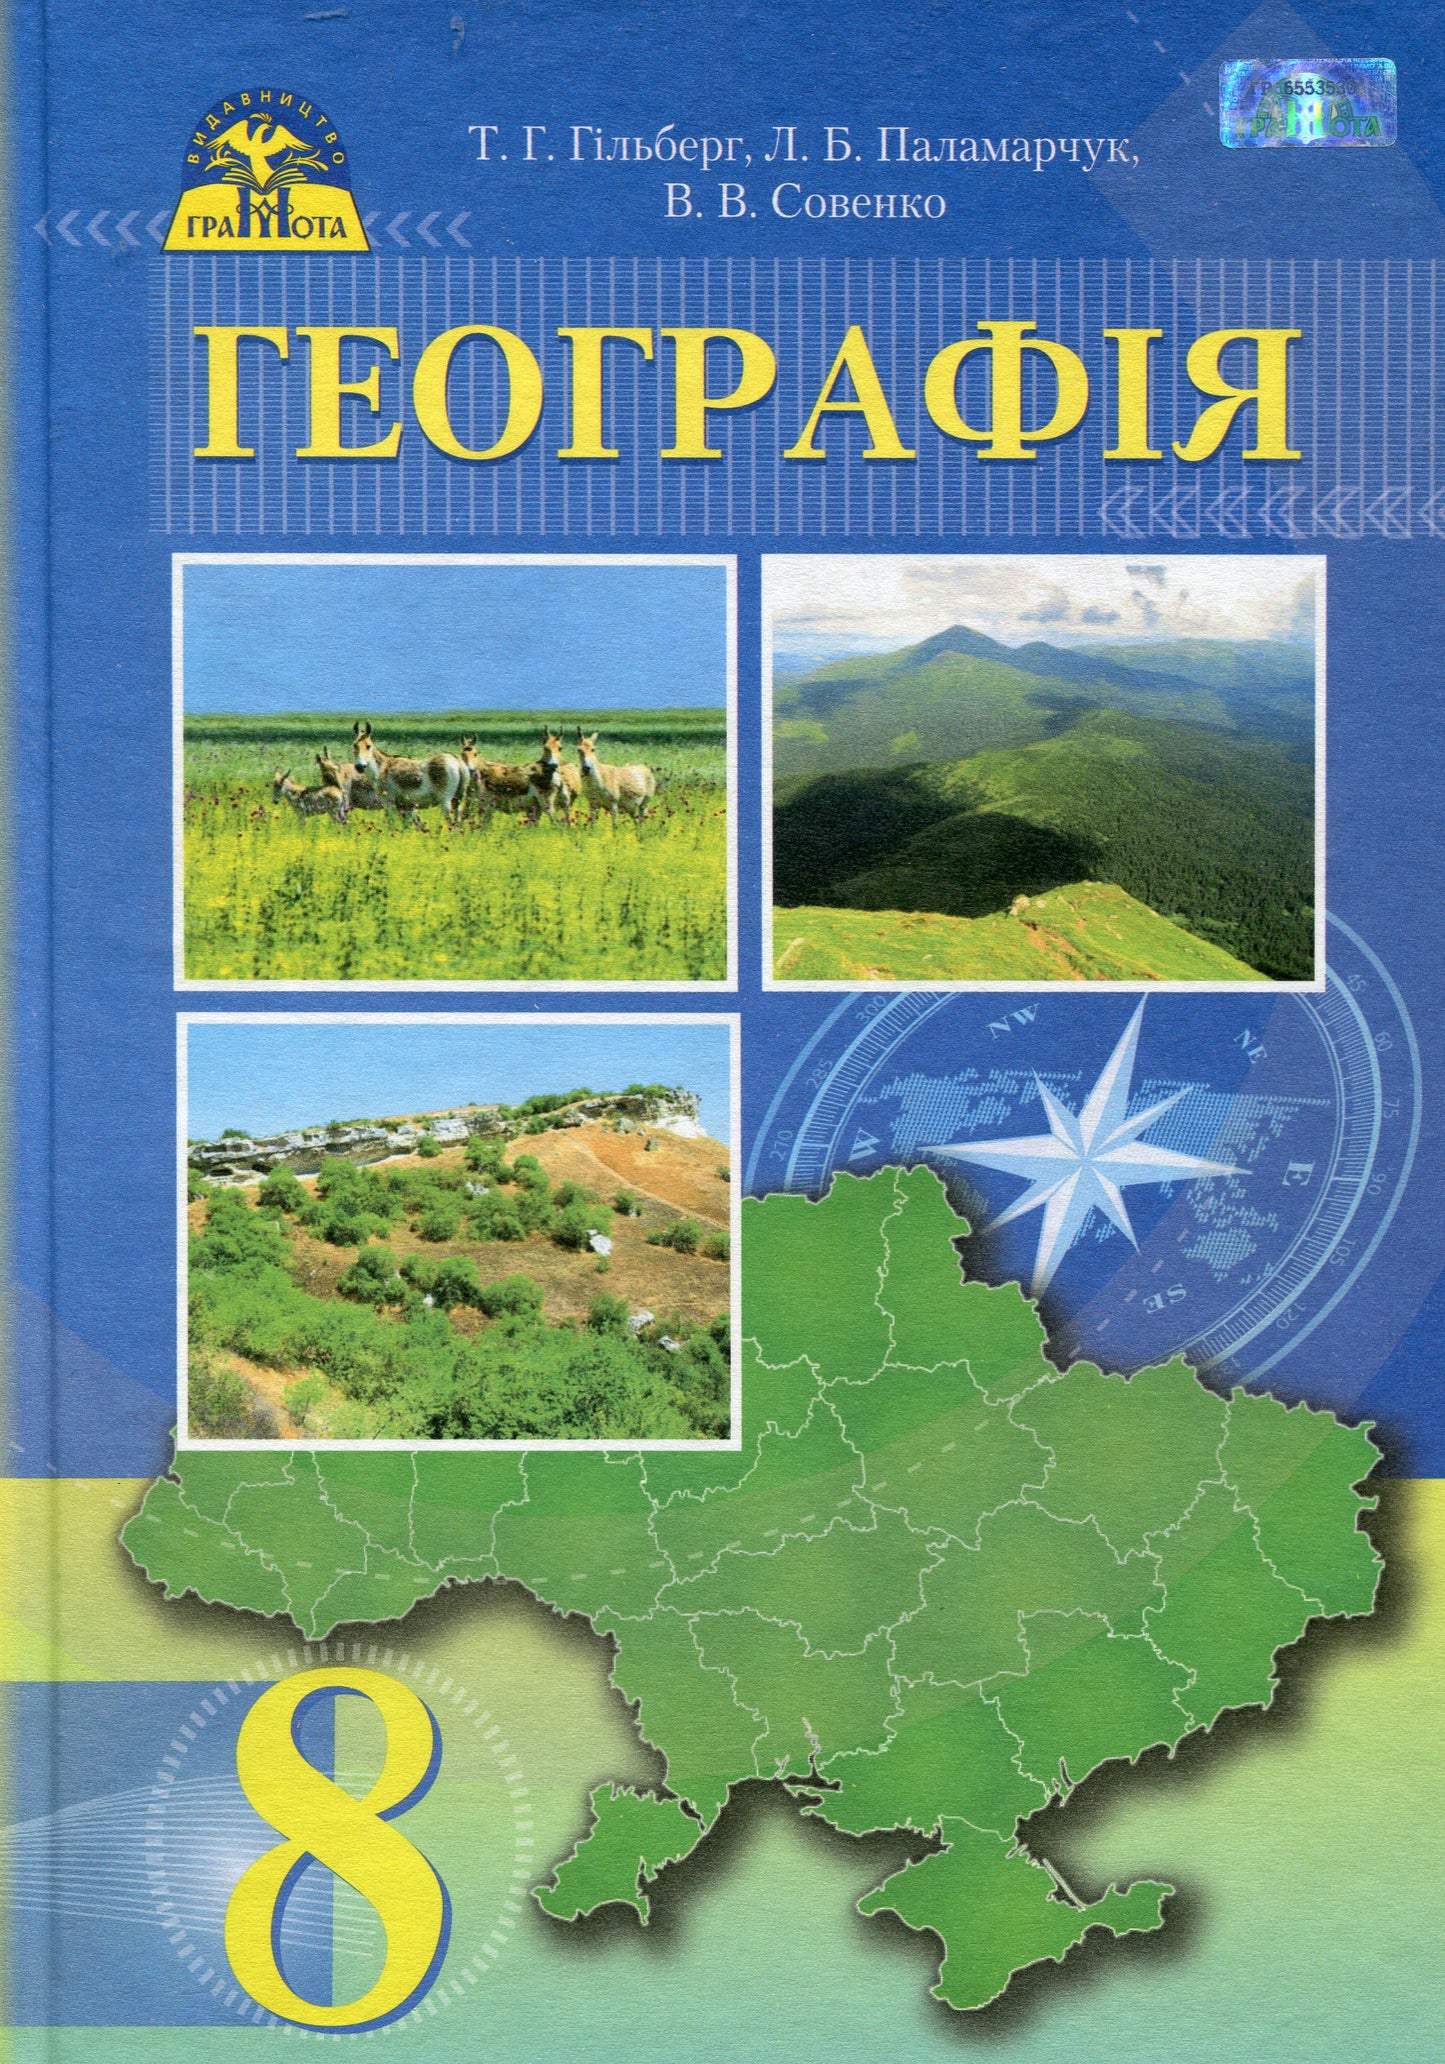 Geography. Textbook. 8Th Grade / Географія. Підручник. 8 клас Tatyana Hilberg / Тетяна Гільберг 9789663495767-1